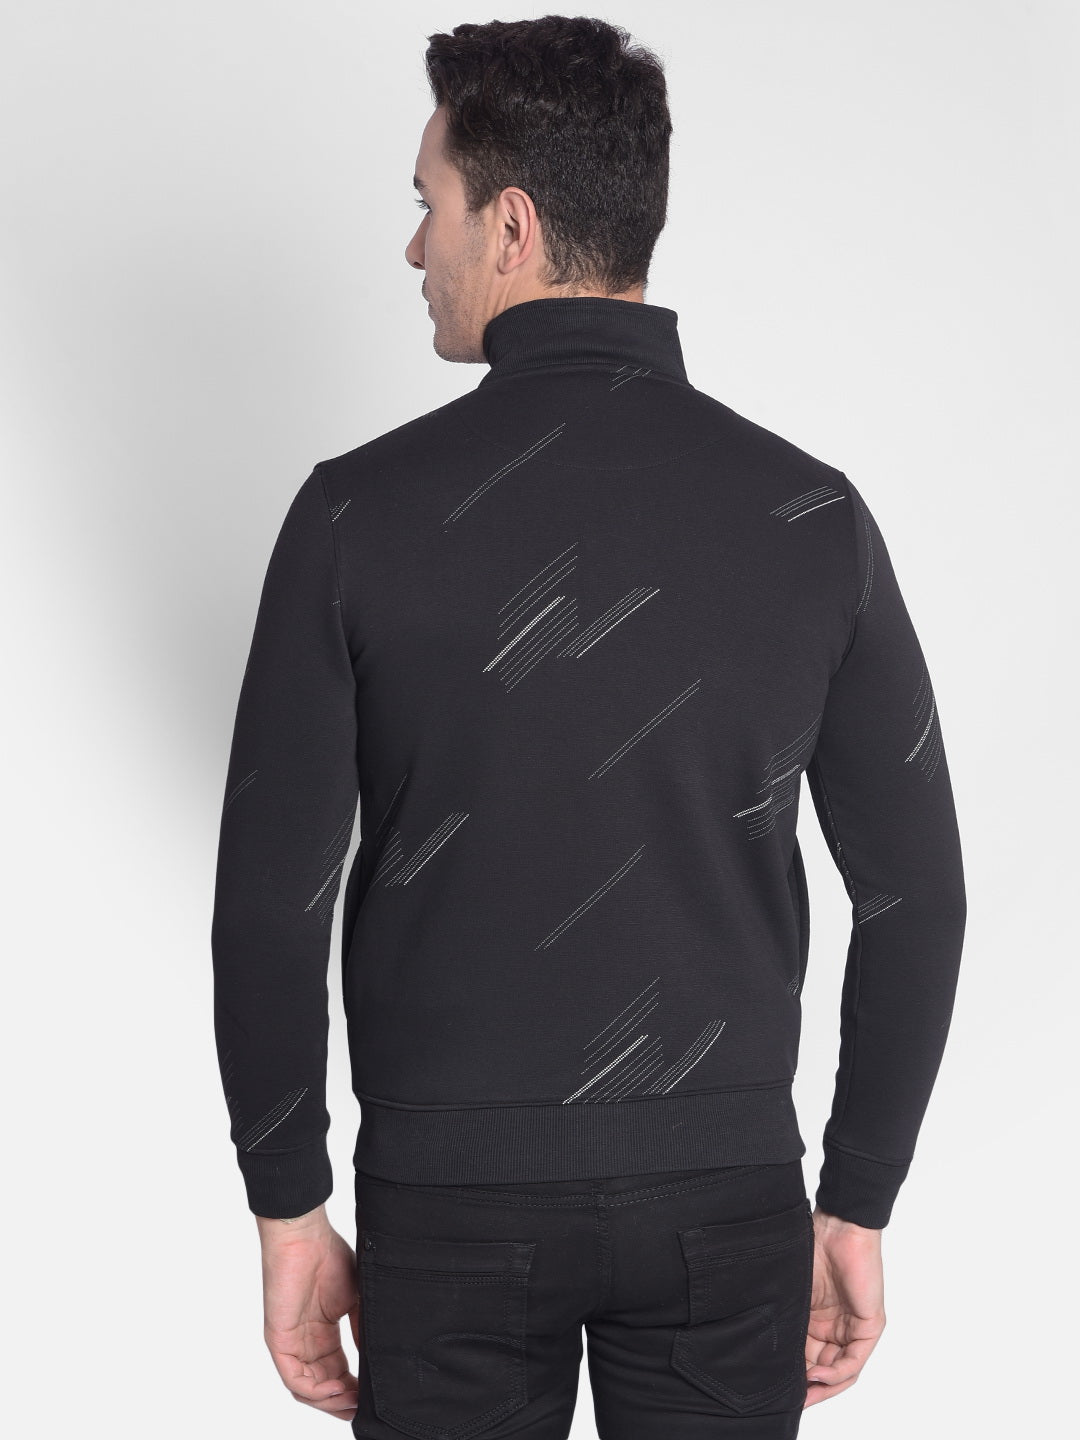 Black Printed Front-Open Sweatshirt-Men Sweatshirts-Crimsoune Club